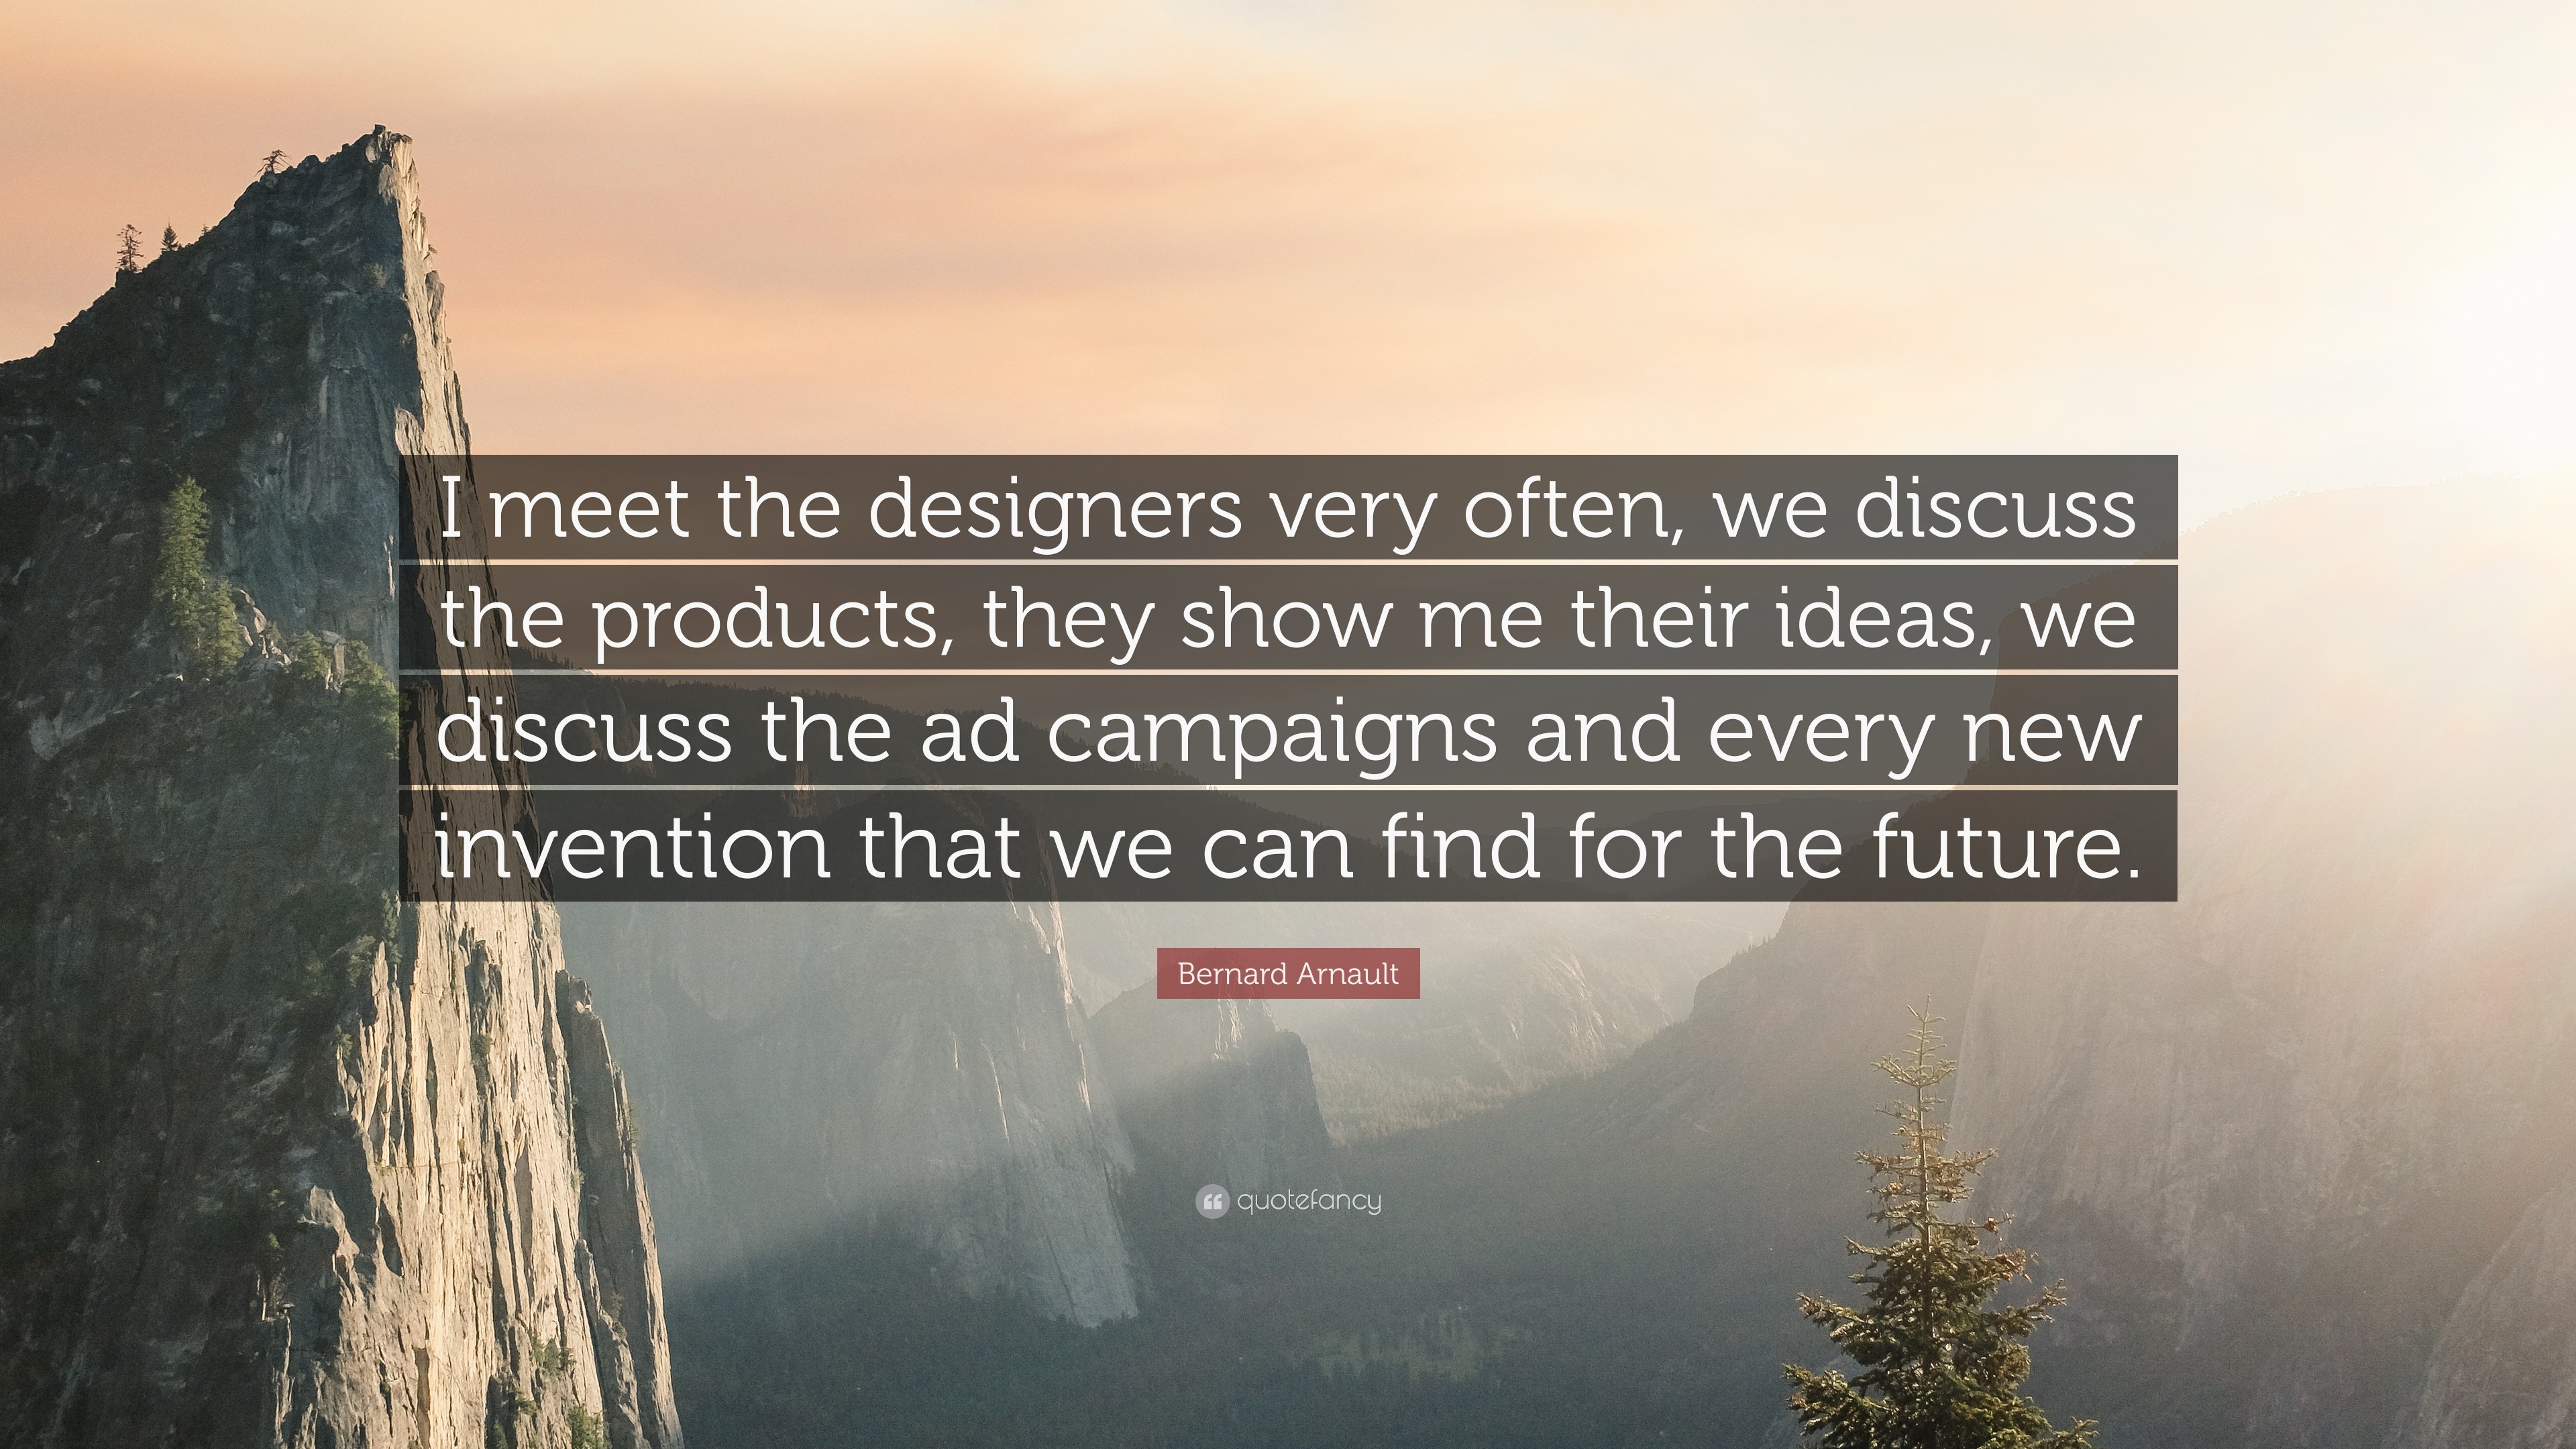 Bernard Arnault Quote: “I meet the designers very often, we